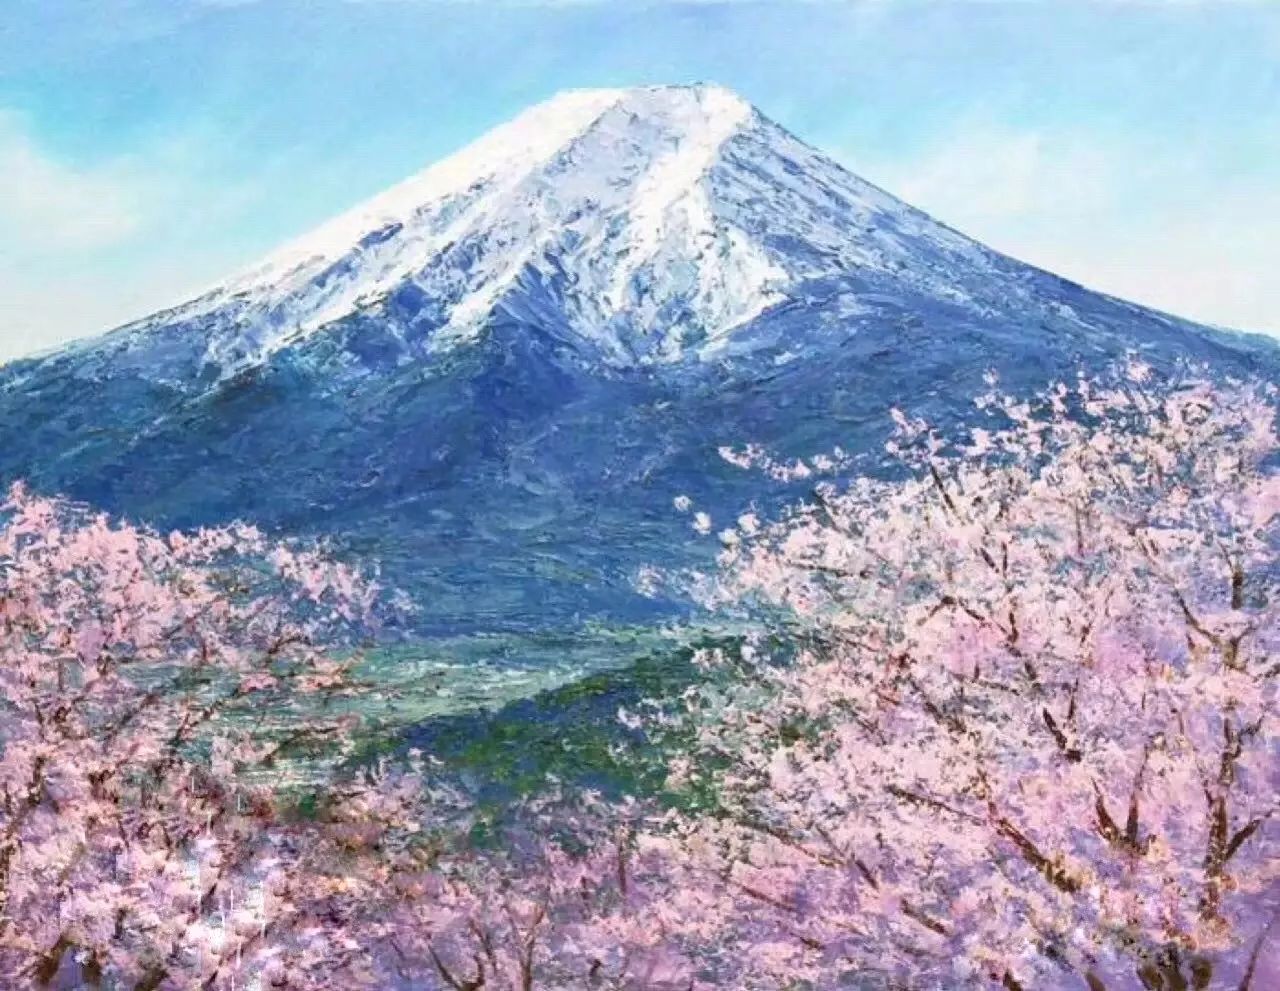 聚绘在12月14日/12月19日|《白玫瑰/富士山/日出》的选择